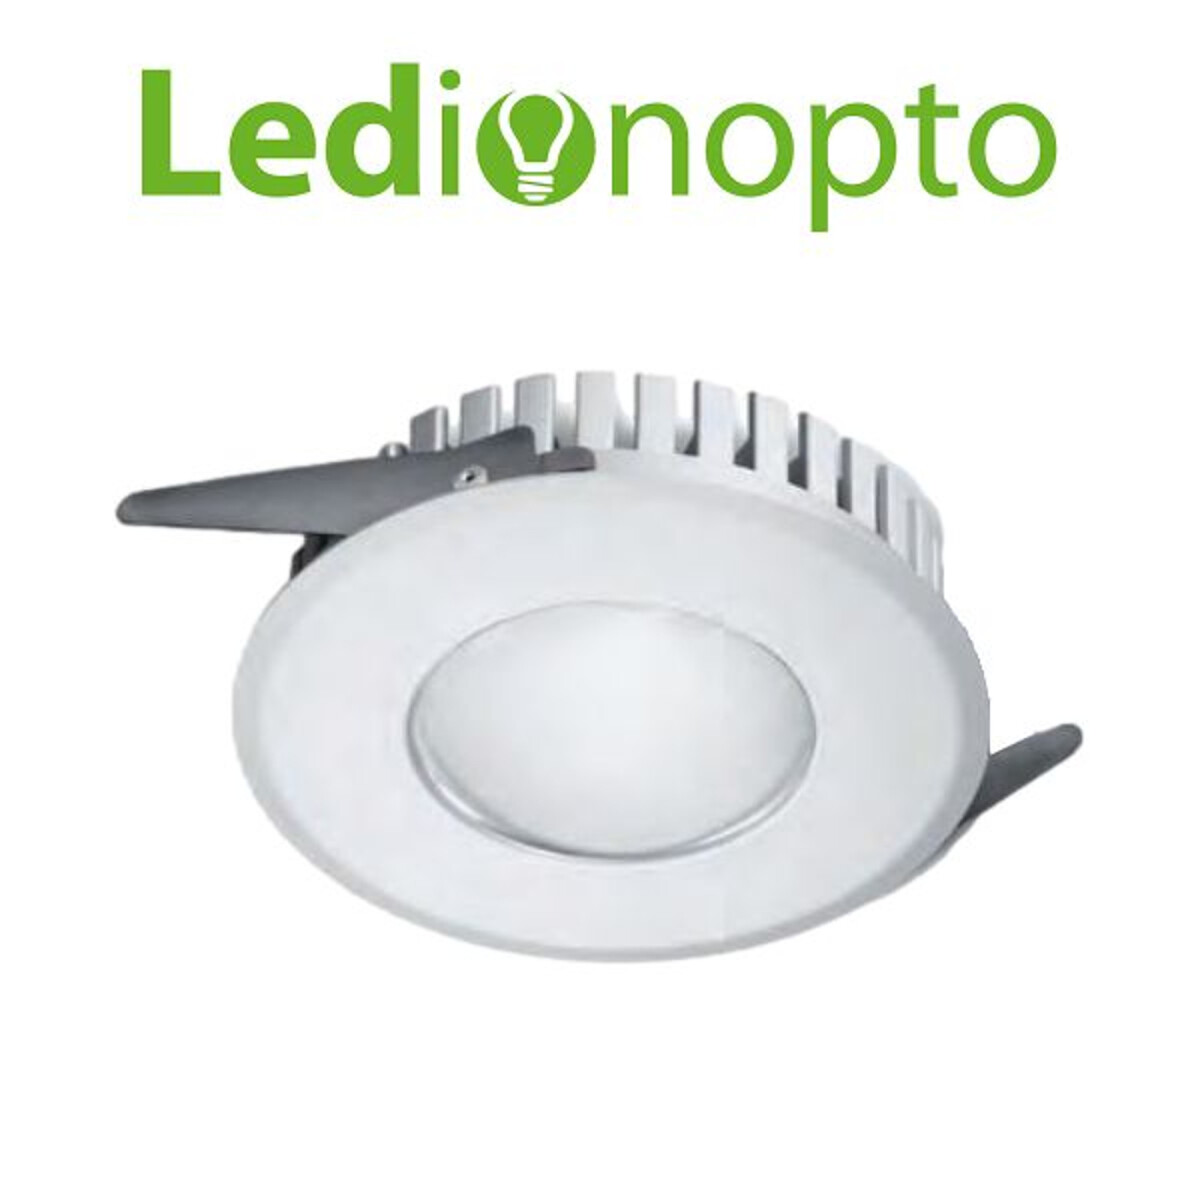 Ledion - LEDTD3215W6K - Potencia 15W, Blanco Frío (Cw) - 001 